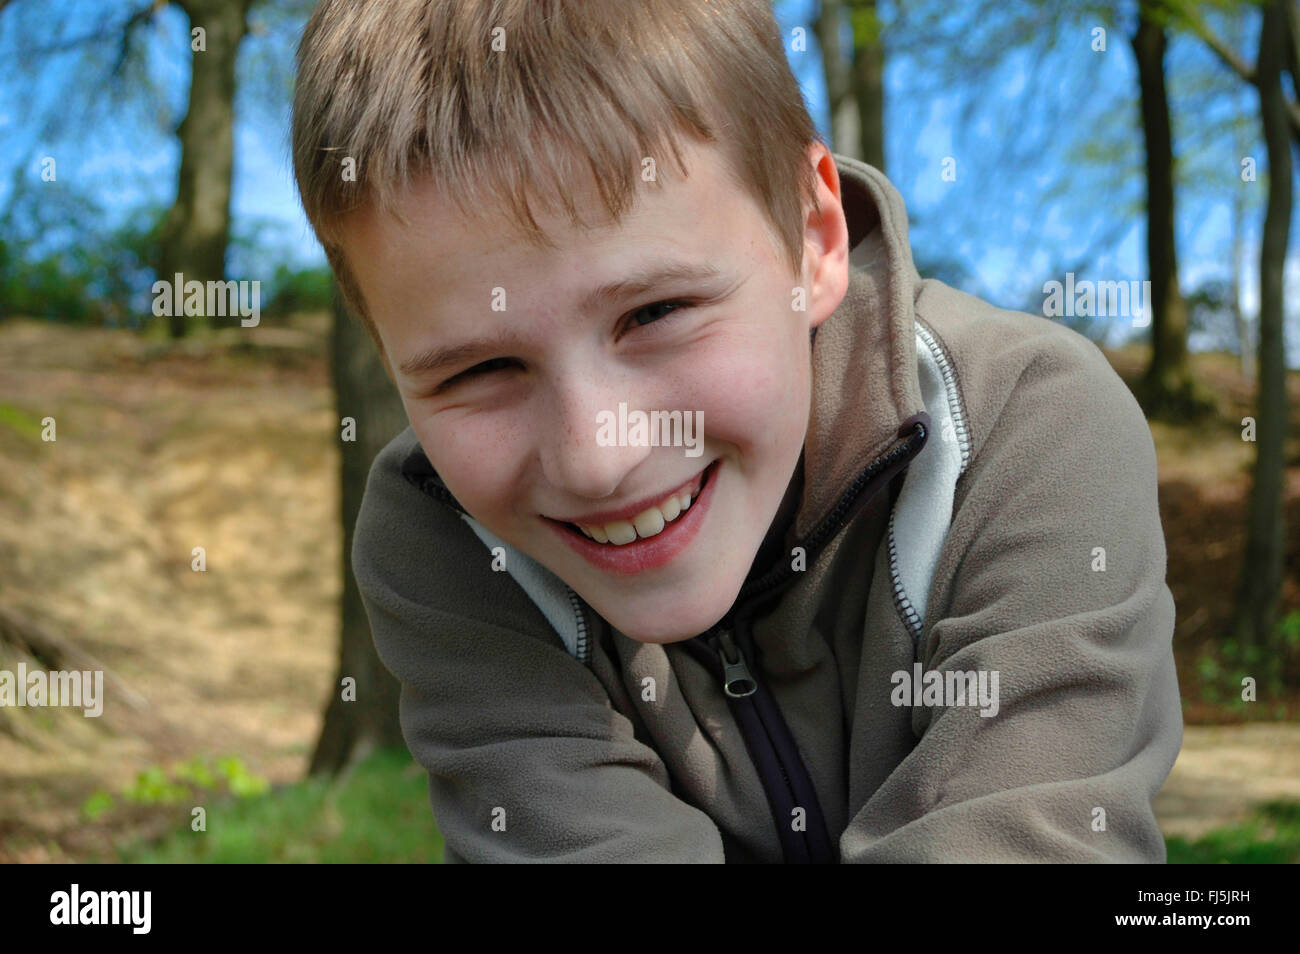 Jolly garçon dans une forêt, portrait d'un enfant, Allemagne Banque D'Images